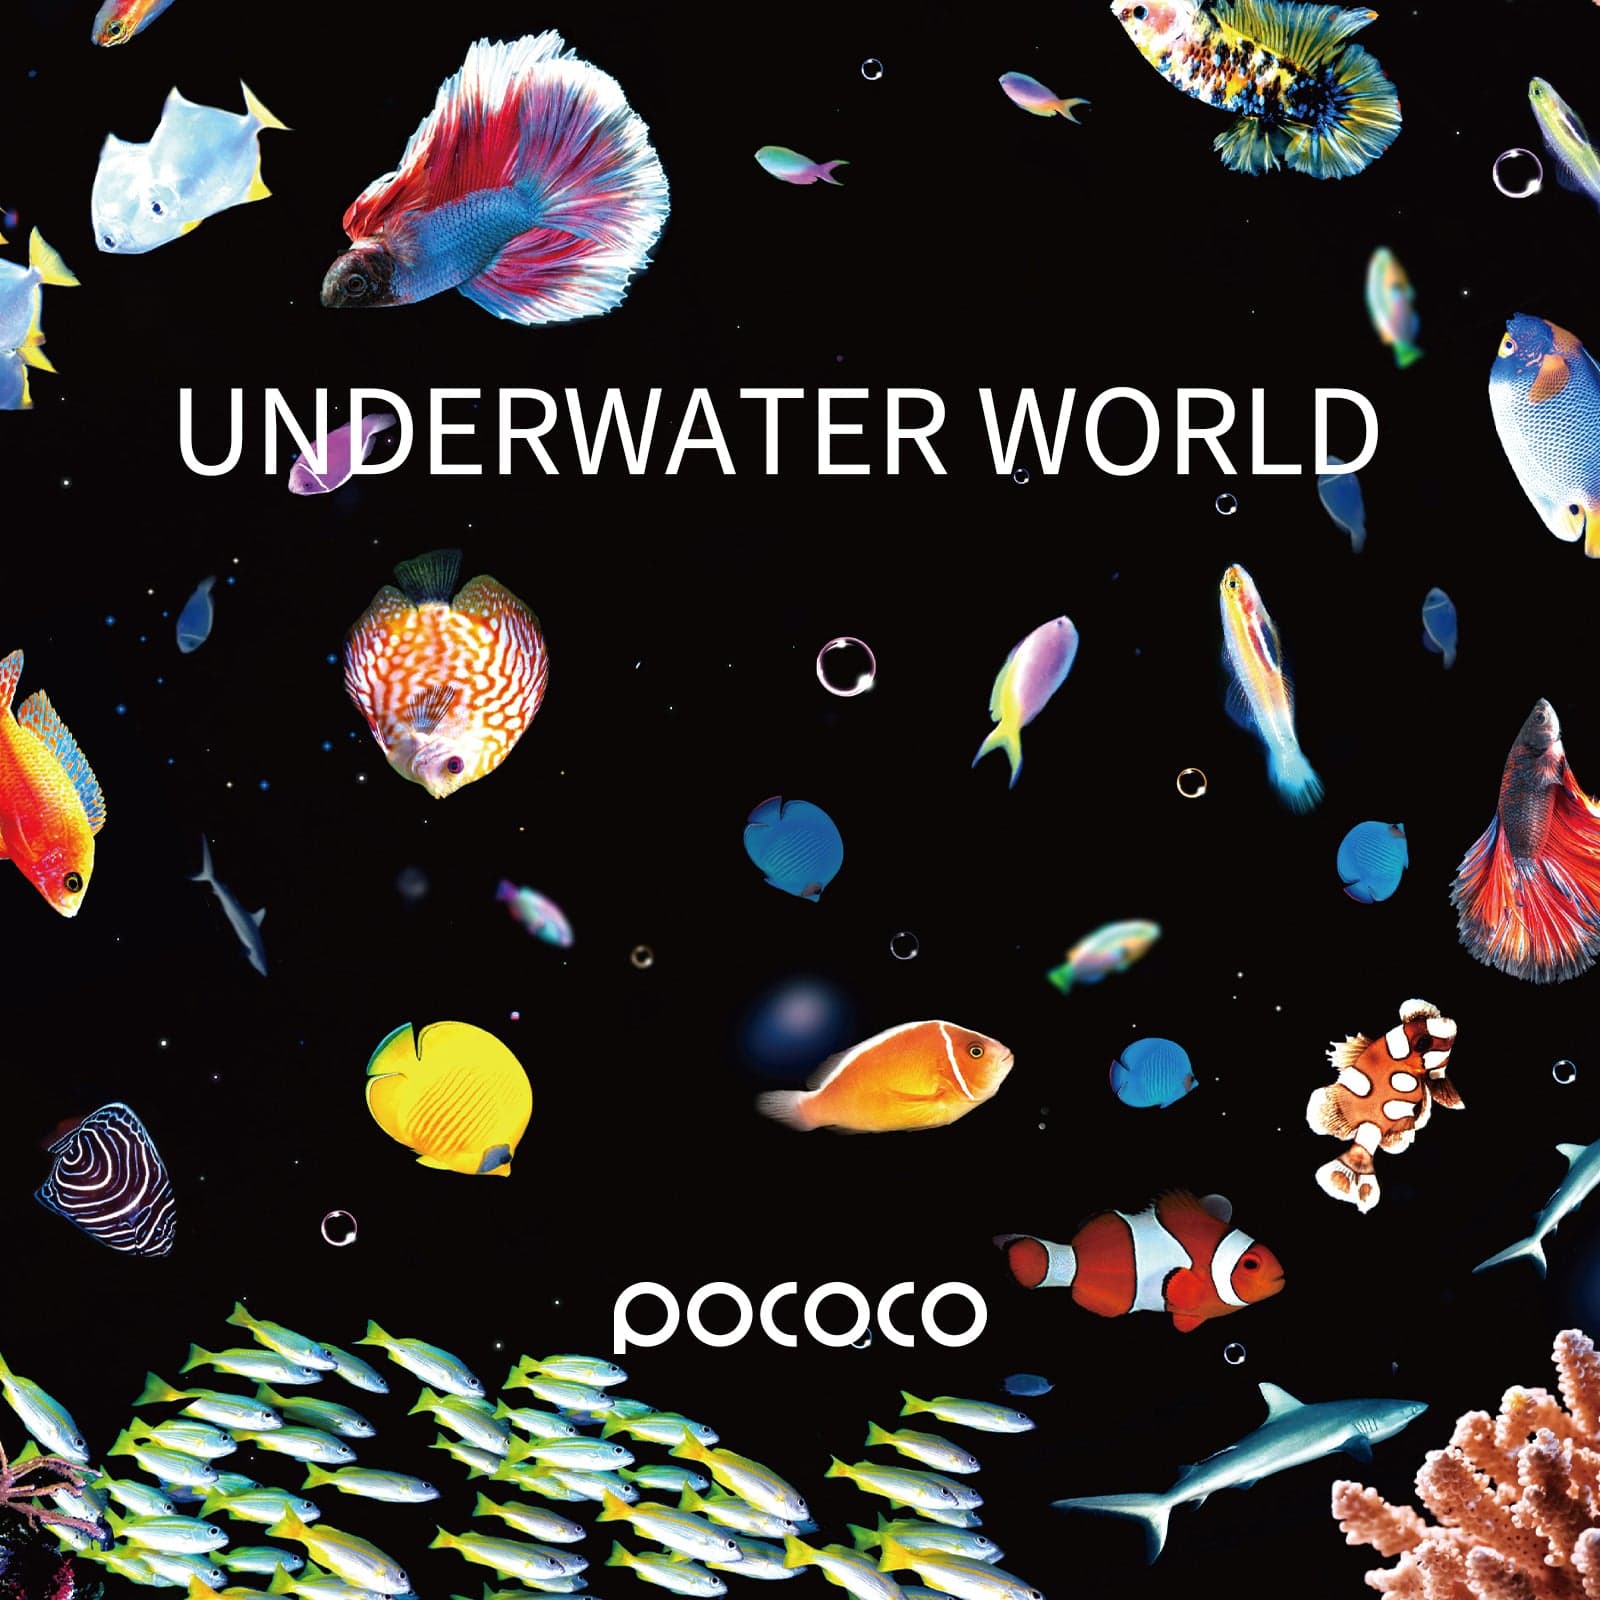 Underwater World - Pococo Galaxy Projector Discs